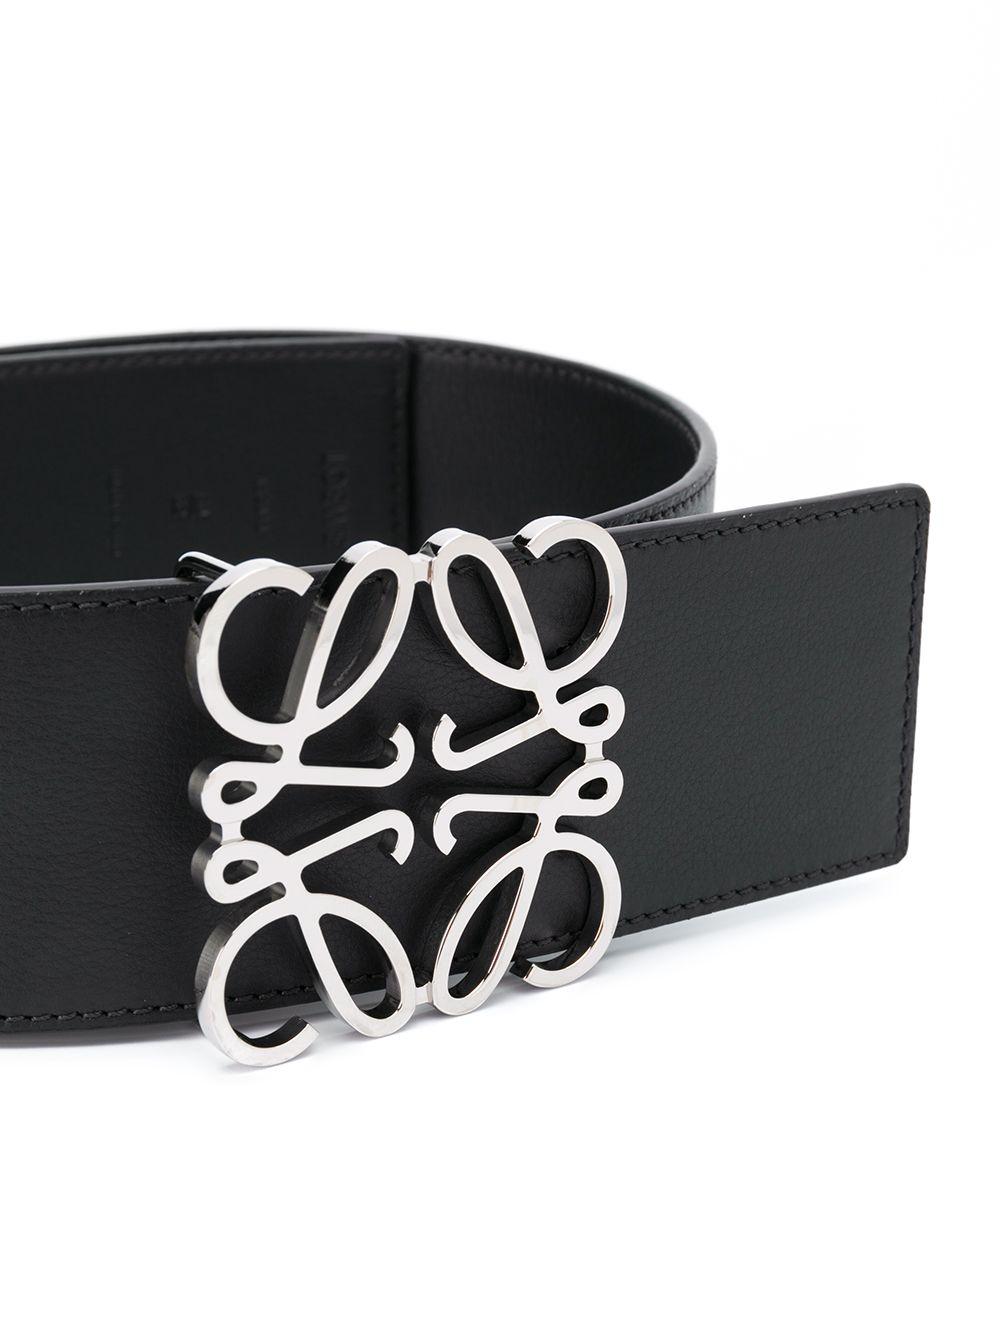 Loewe Anagram Leather Buckle Belt in Black - Lyst